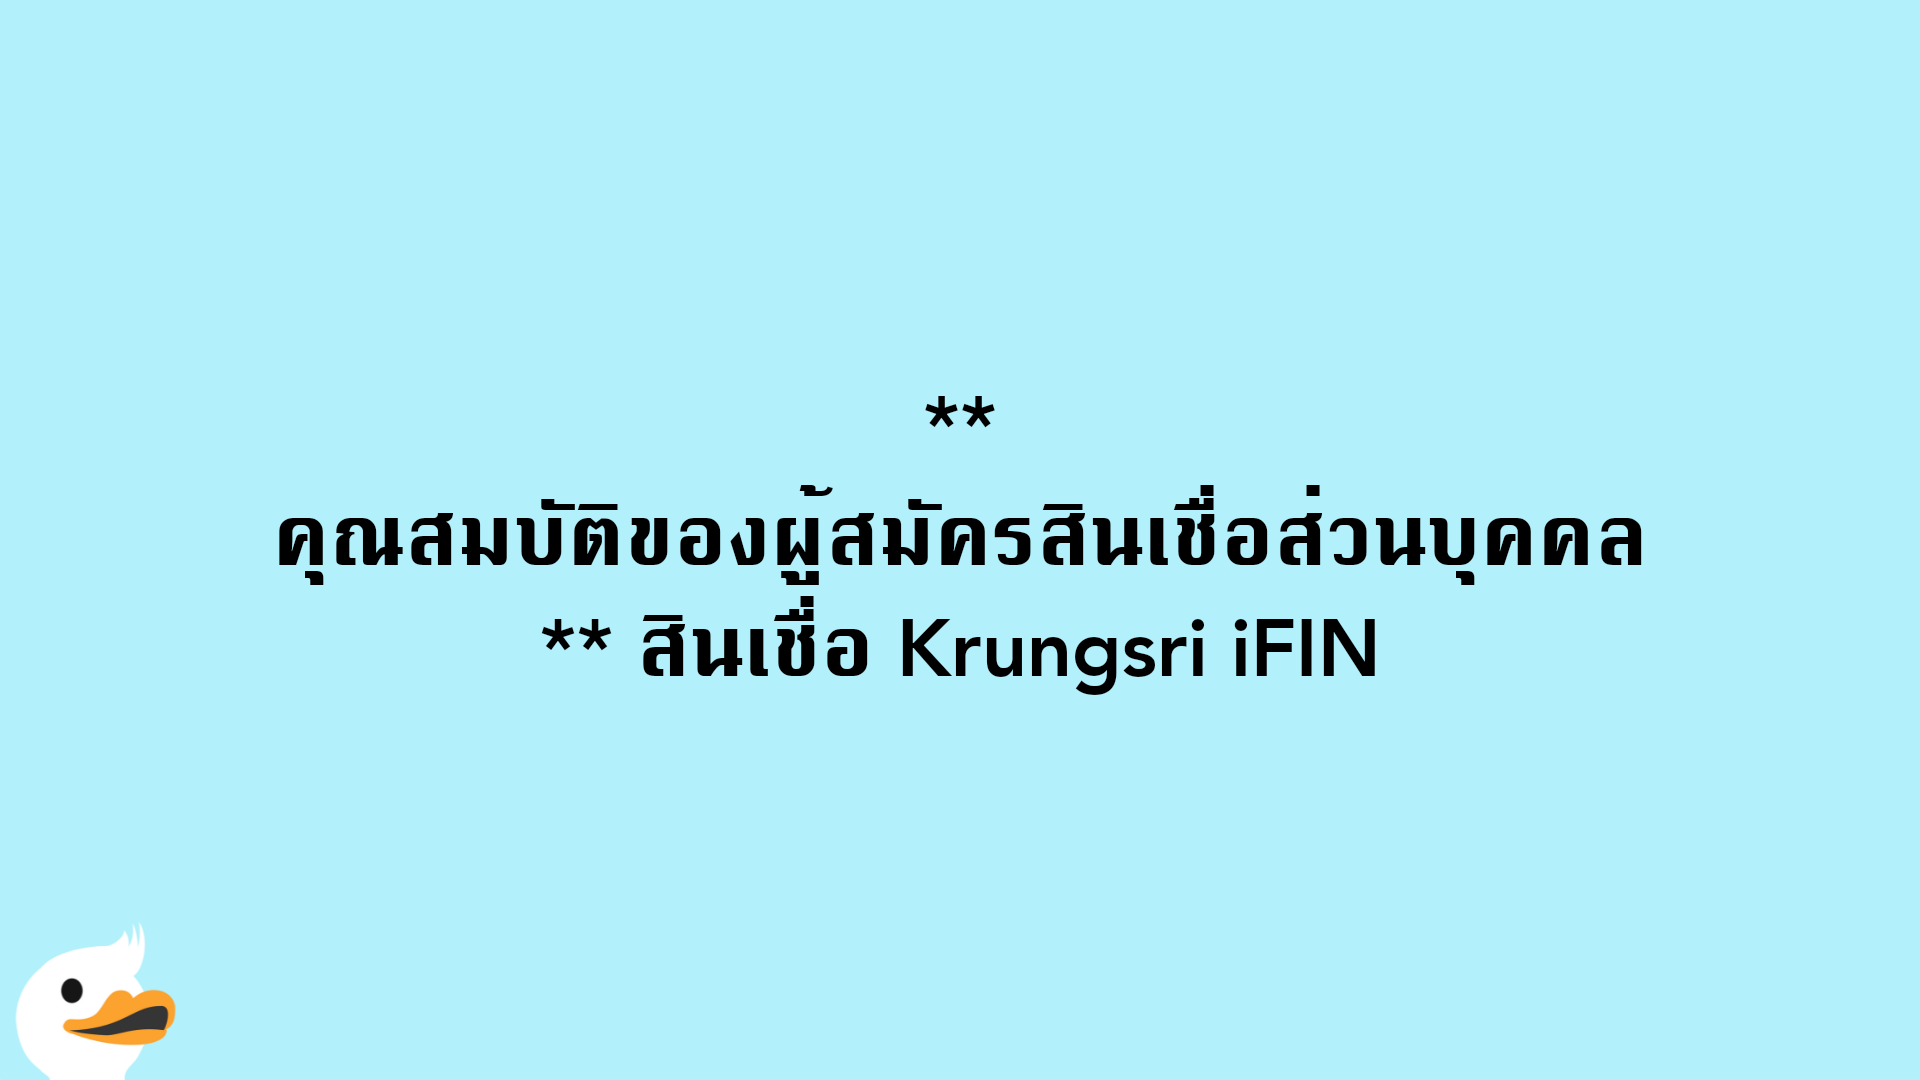 คุณสมบัติของผู้สมัครสินเชื่อส่วนบุคคล สินเชื่อ Krungsri iFIN